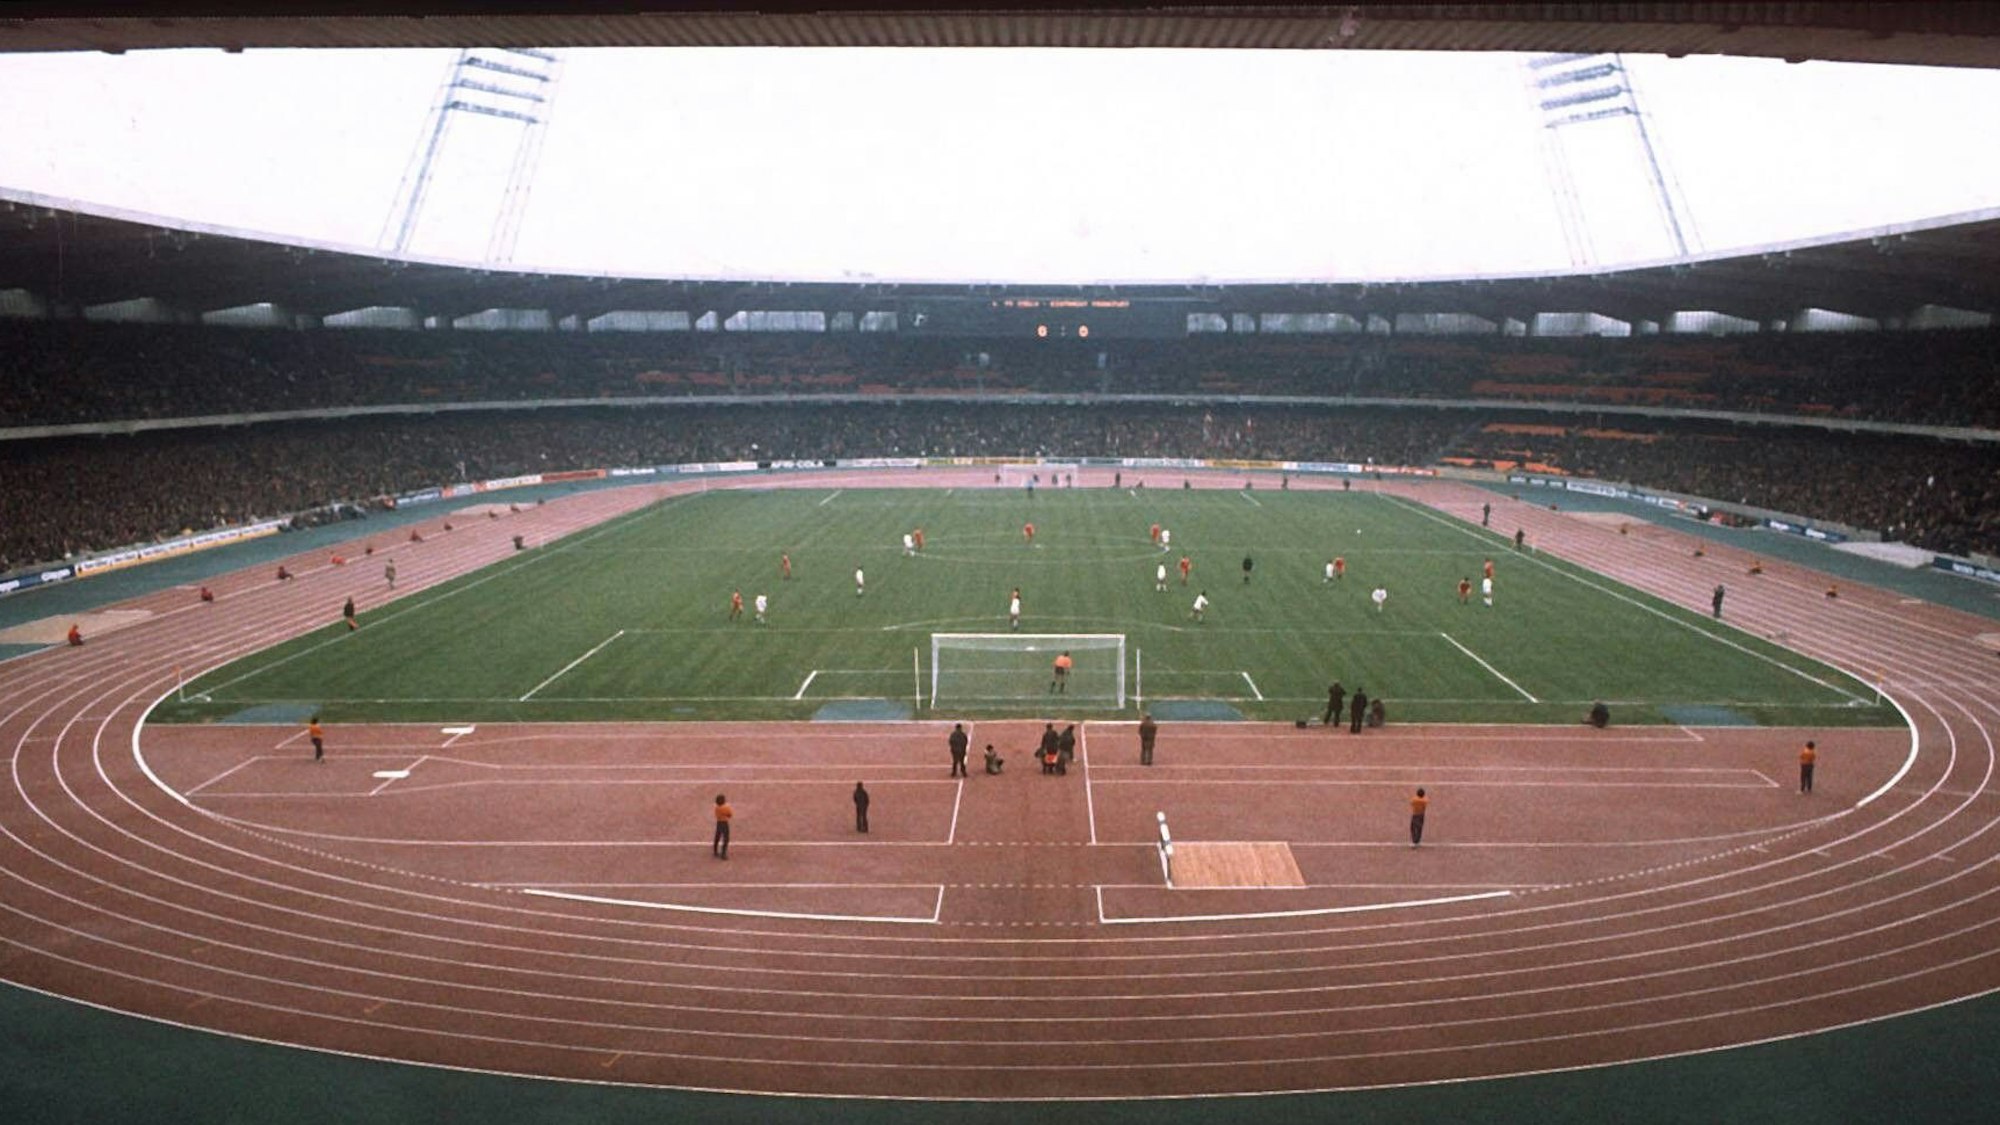 Blick in das Müngersdorfer Stadion in Köln im Jahr 1975. Das Spielfeld befindet sich inmitten einer roten Tartanbahn.